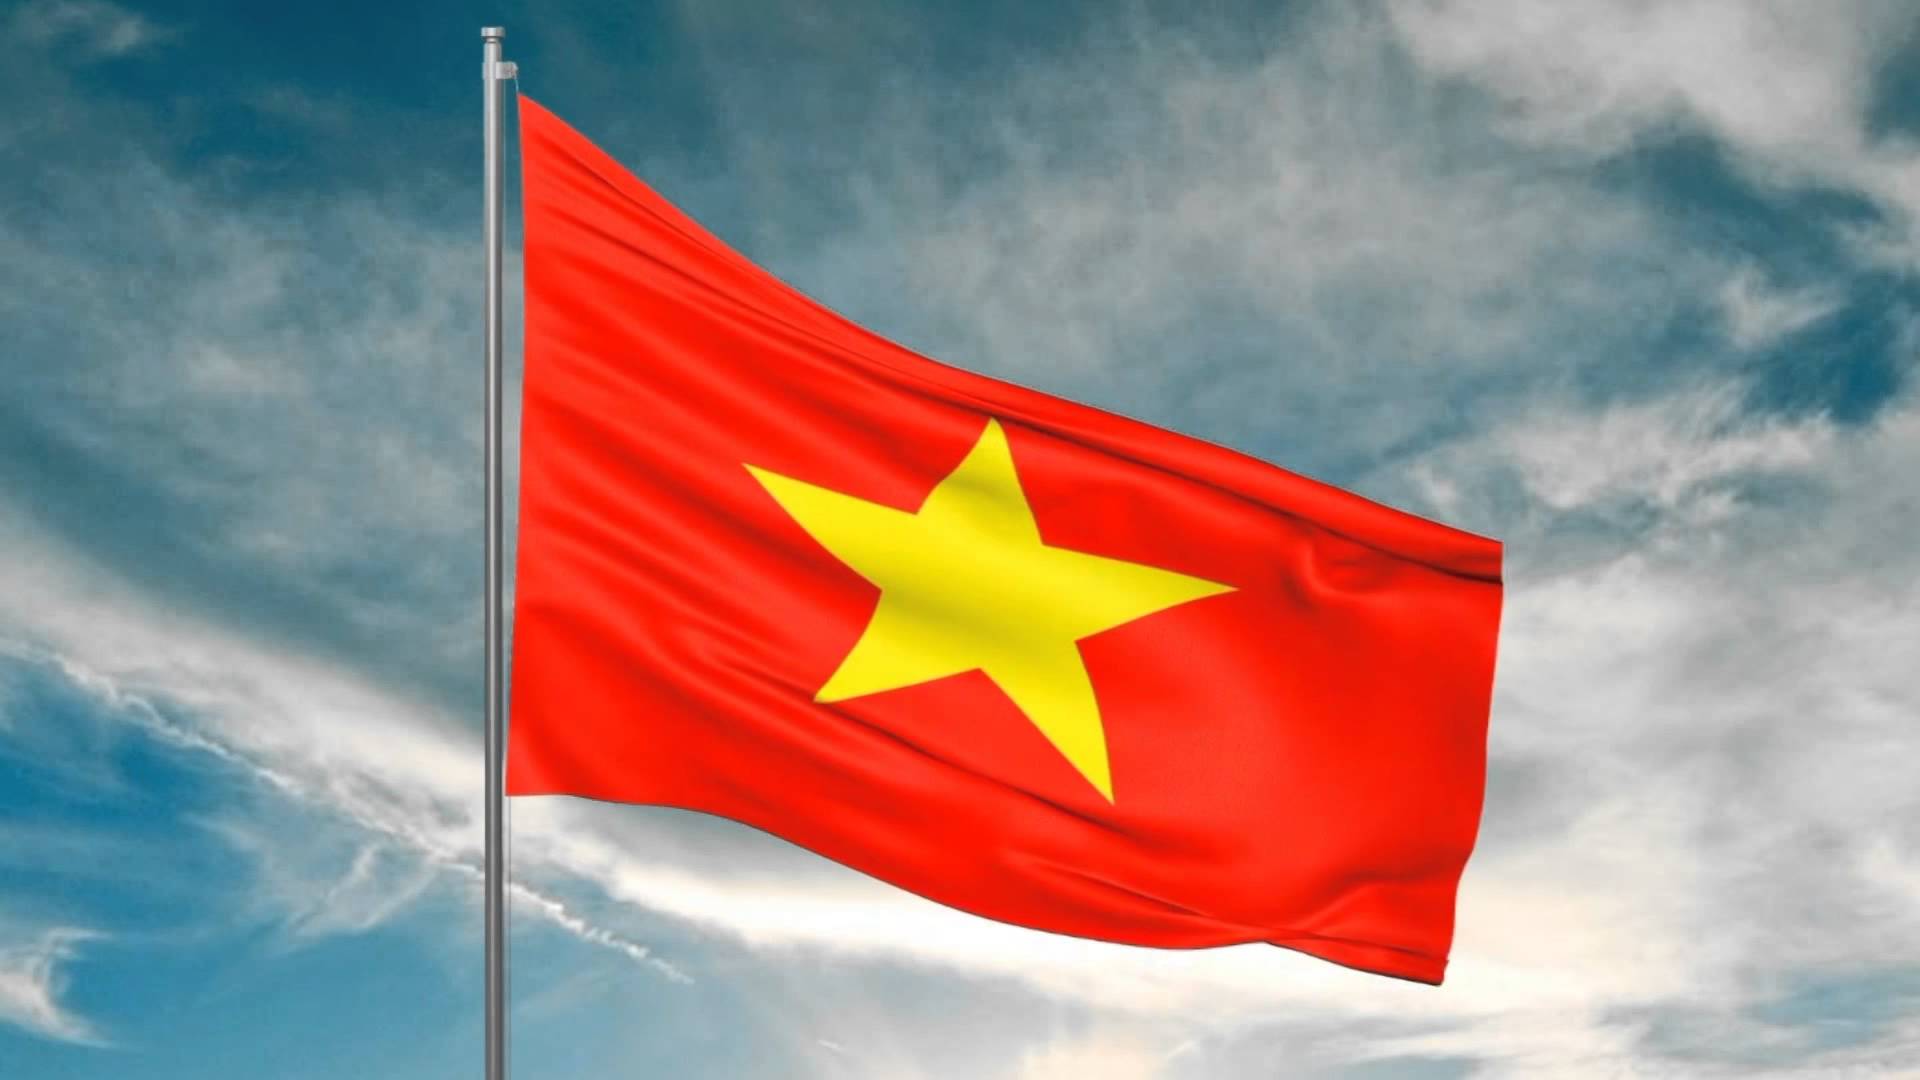 Hình ảnh lá cờ Việt Nam tuyệt đẹp  Hình ảnh Quốc kỳ Việt nam